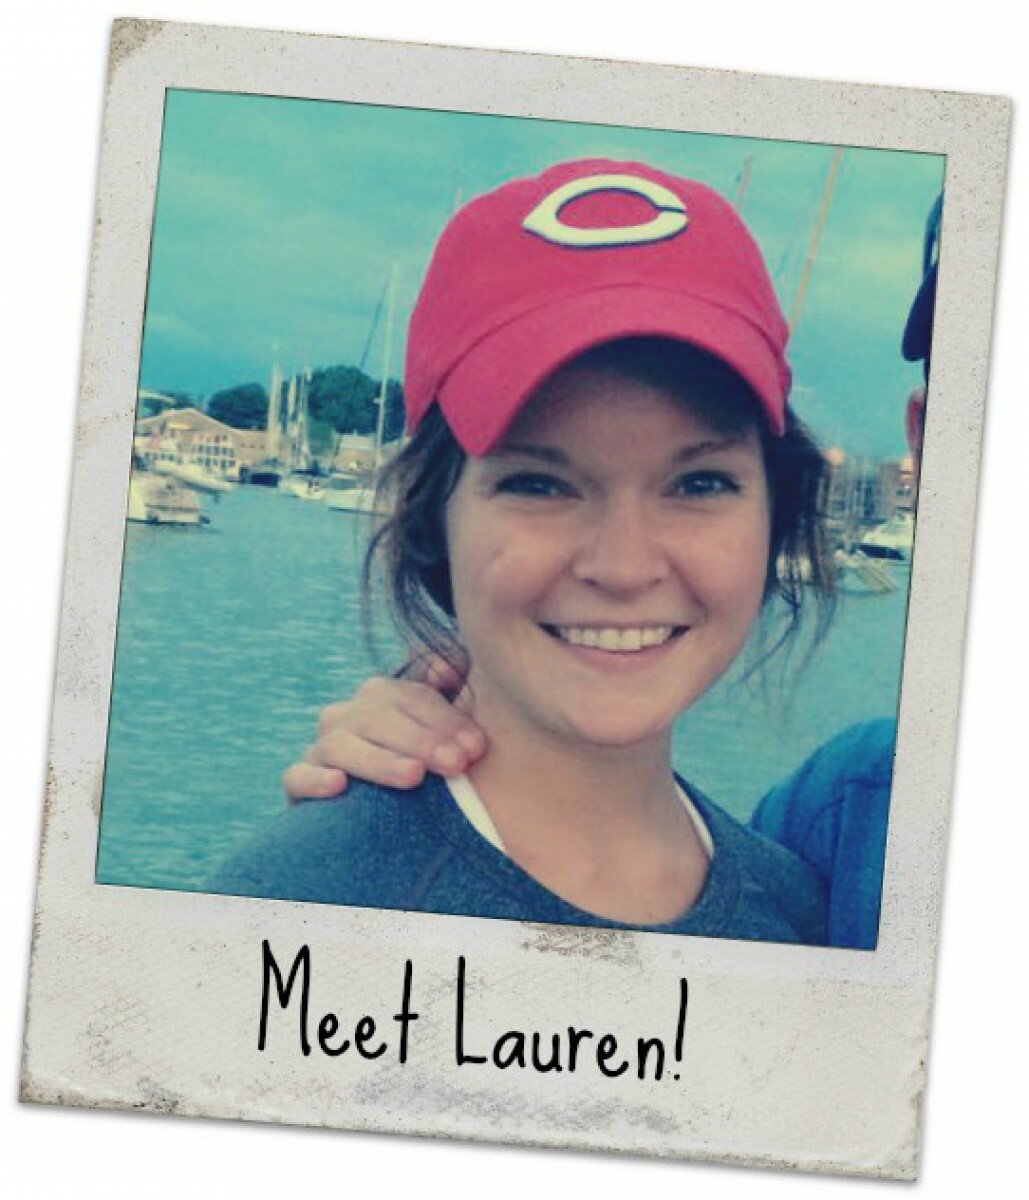 Polaroid style picture of  Lauren with 'Meet Lauren!'